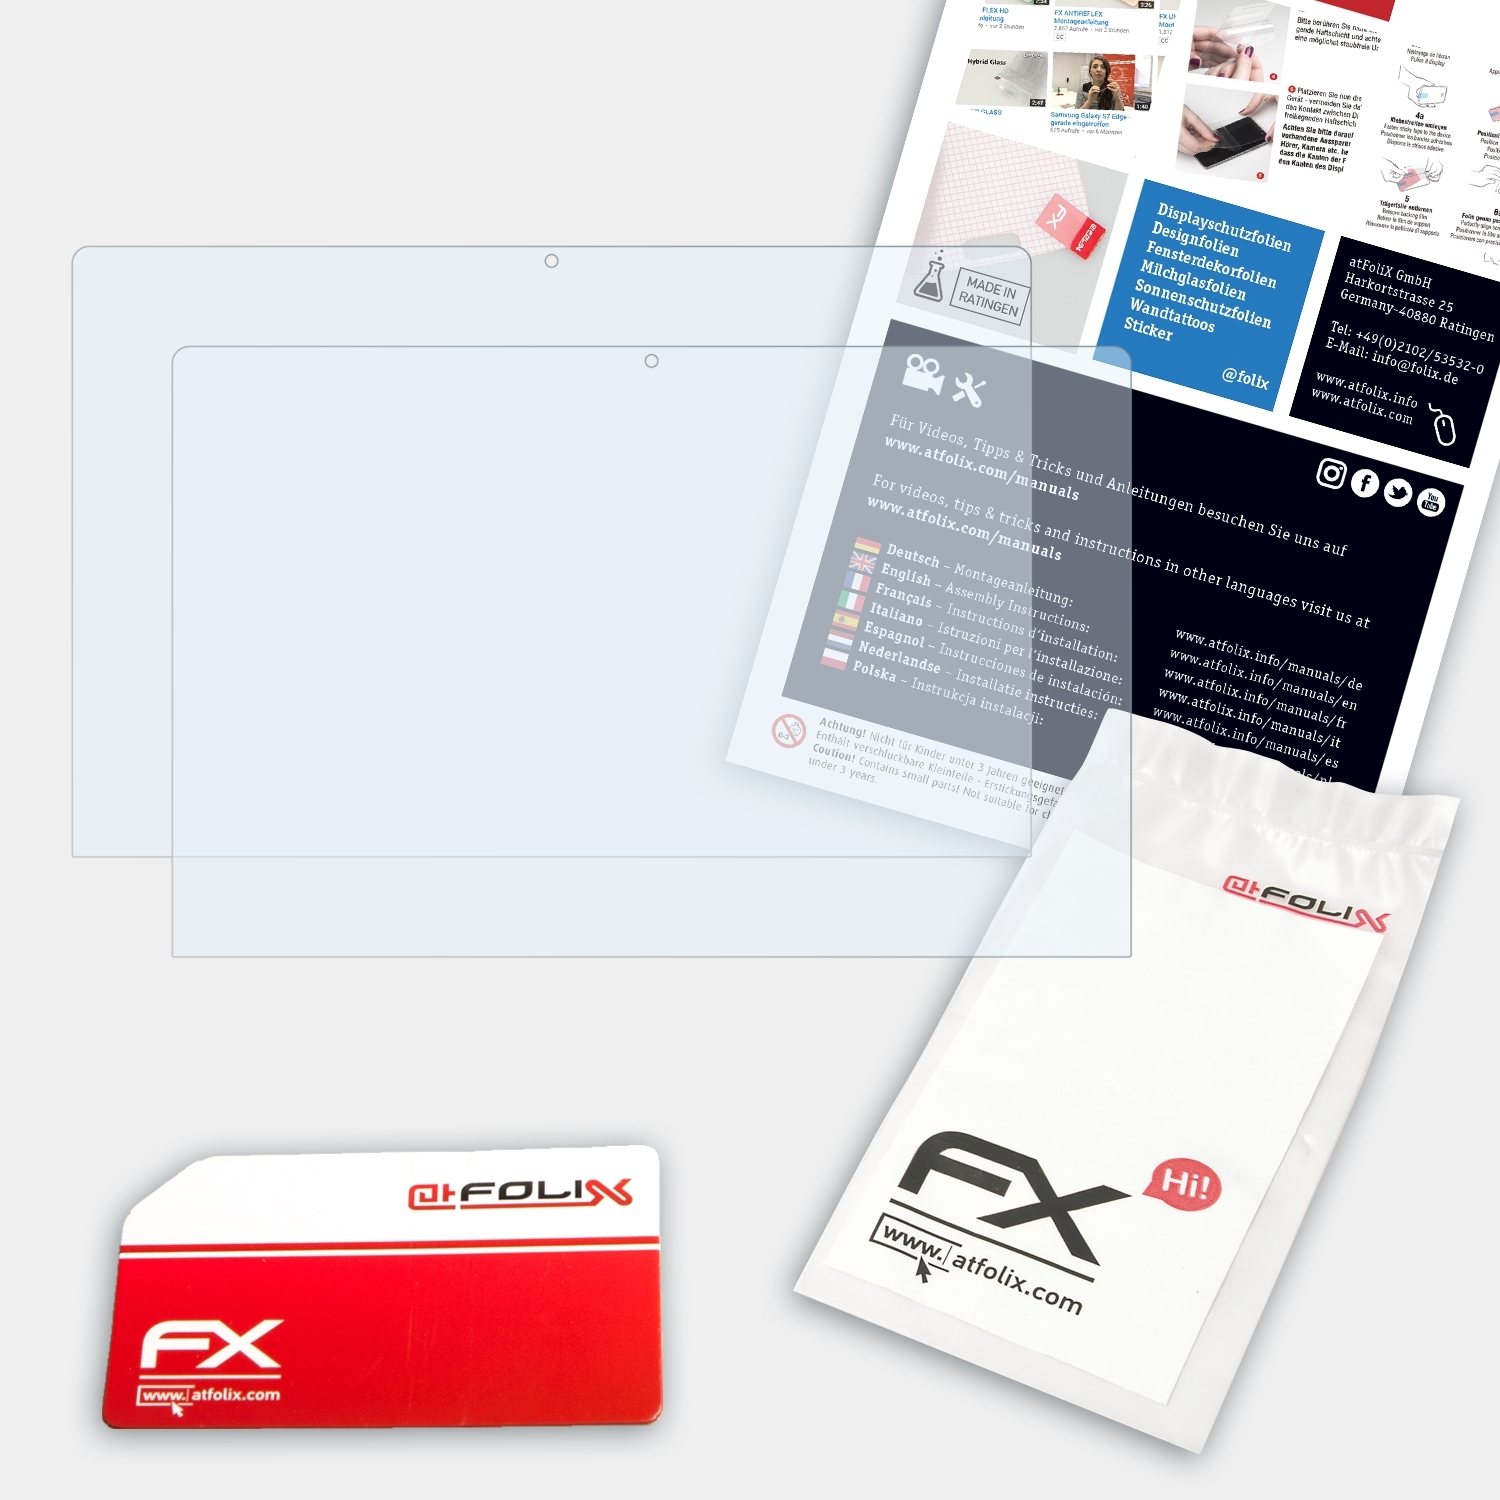 ATFOLIX 2x FX-Clear Displayschutz(für Primebook C11) Trekstor